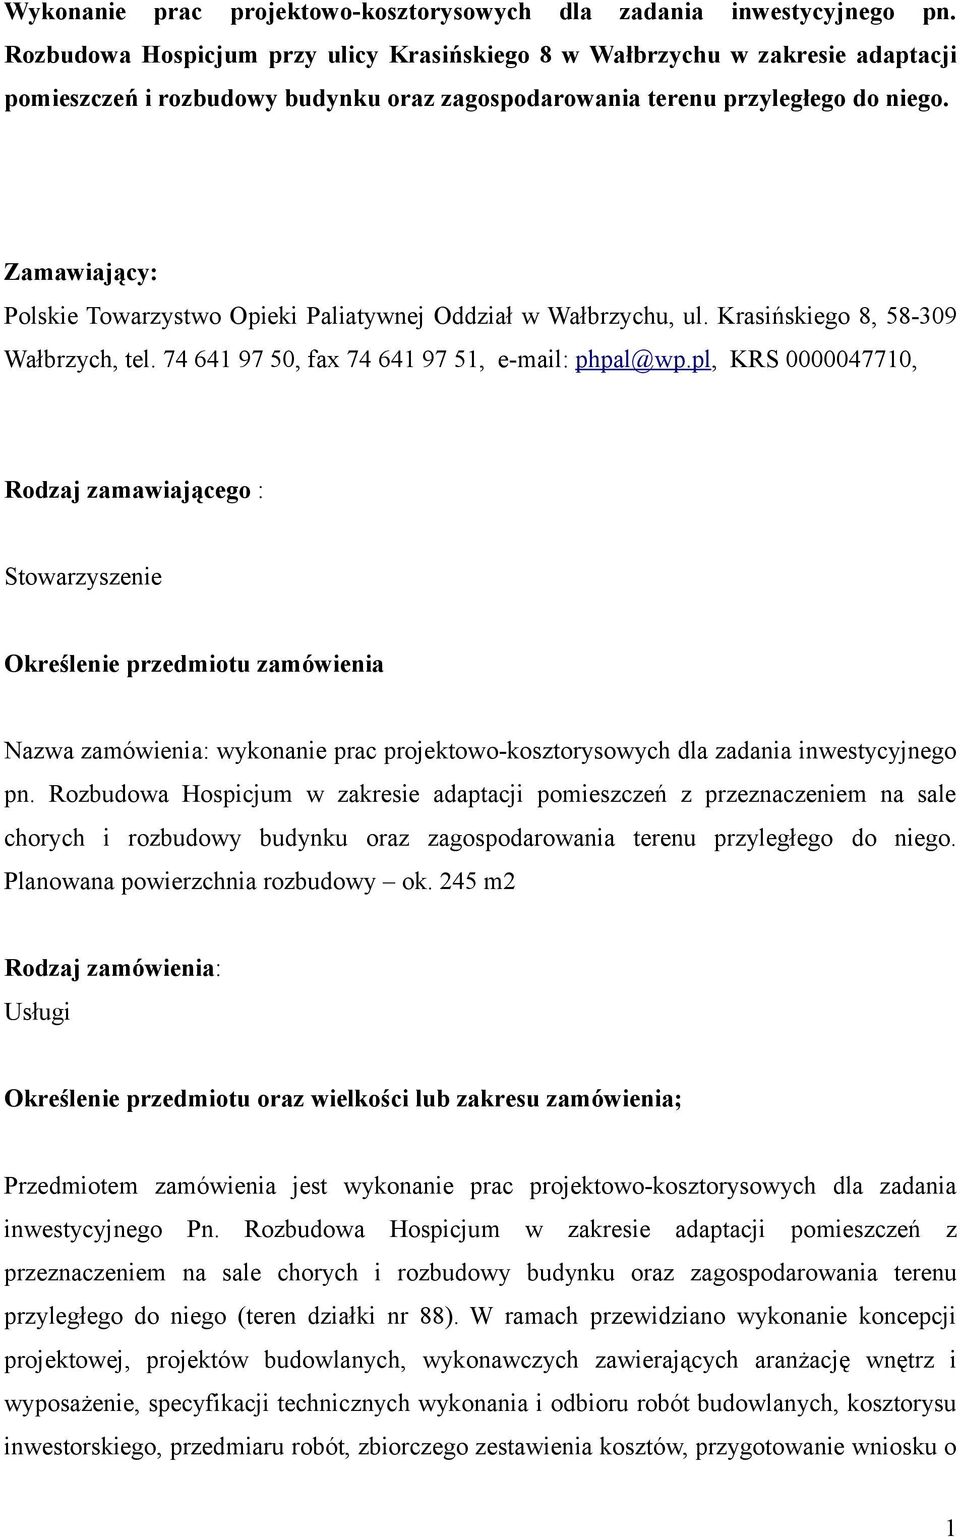 Zamawiający: Polskie Towarzystwo Opieki Paliatywnej Oddział w Wałbrzychu, ul. Krasińskiego 8, 58-309 Wałbrzych, tel. 74 641 97 50, fax 74 641 97 51, e-mail: phpal@wp.